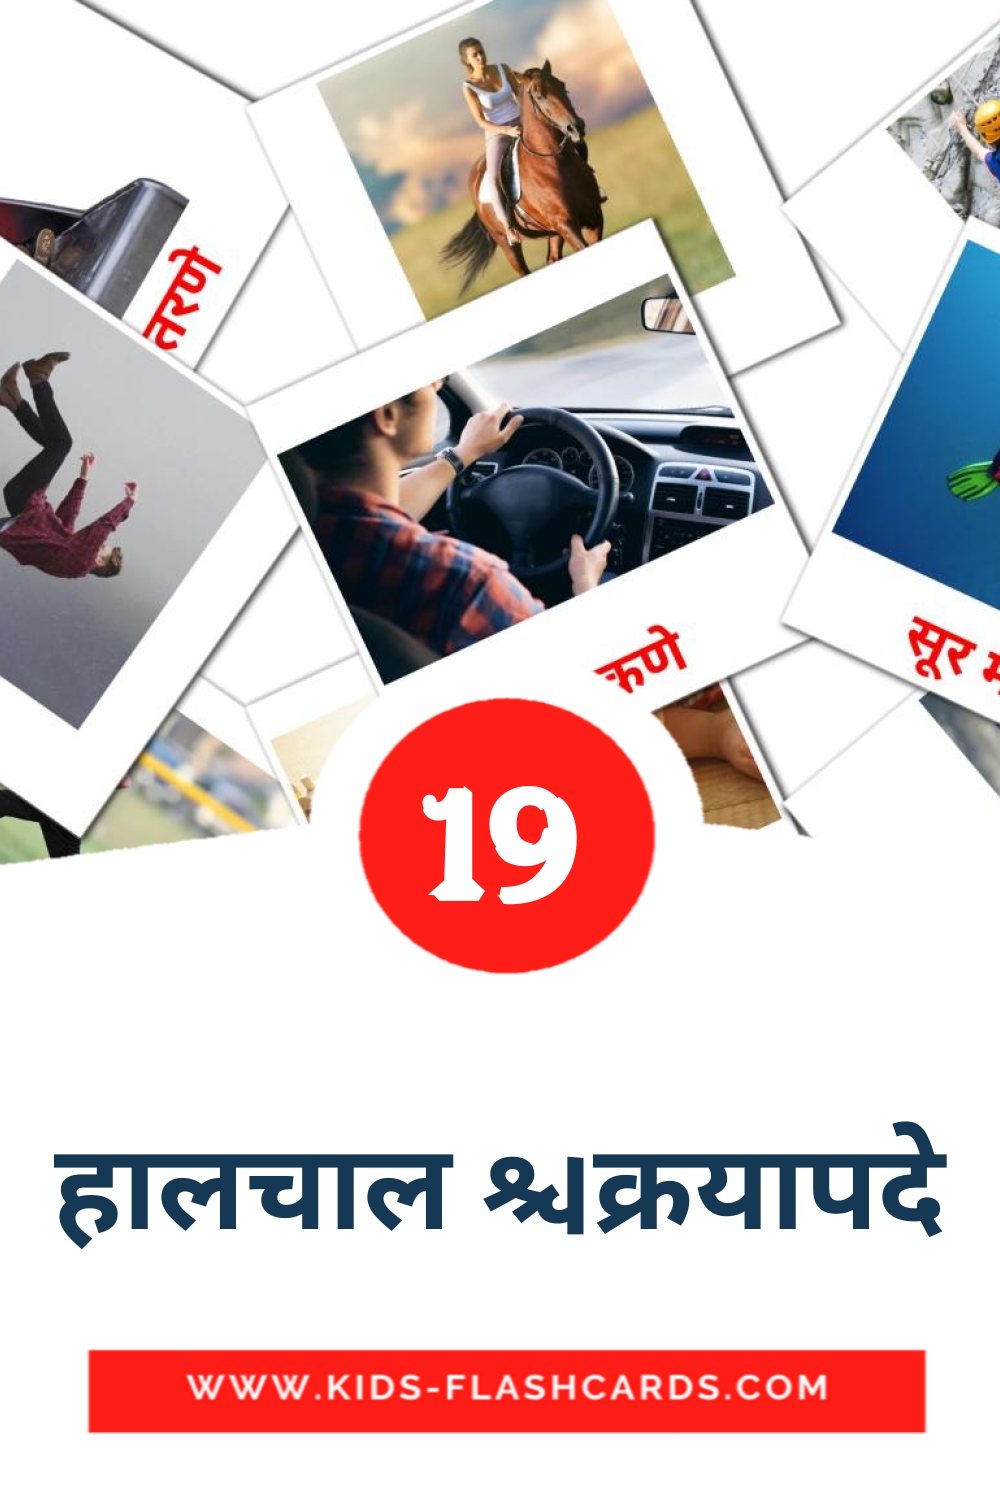 19 हालचाल क्रियापदे fotokaarten voor kleuters in het marathi